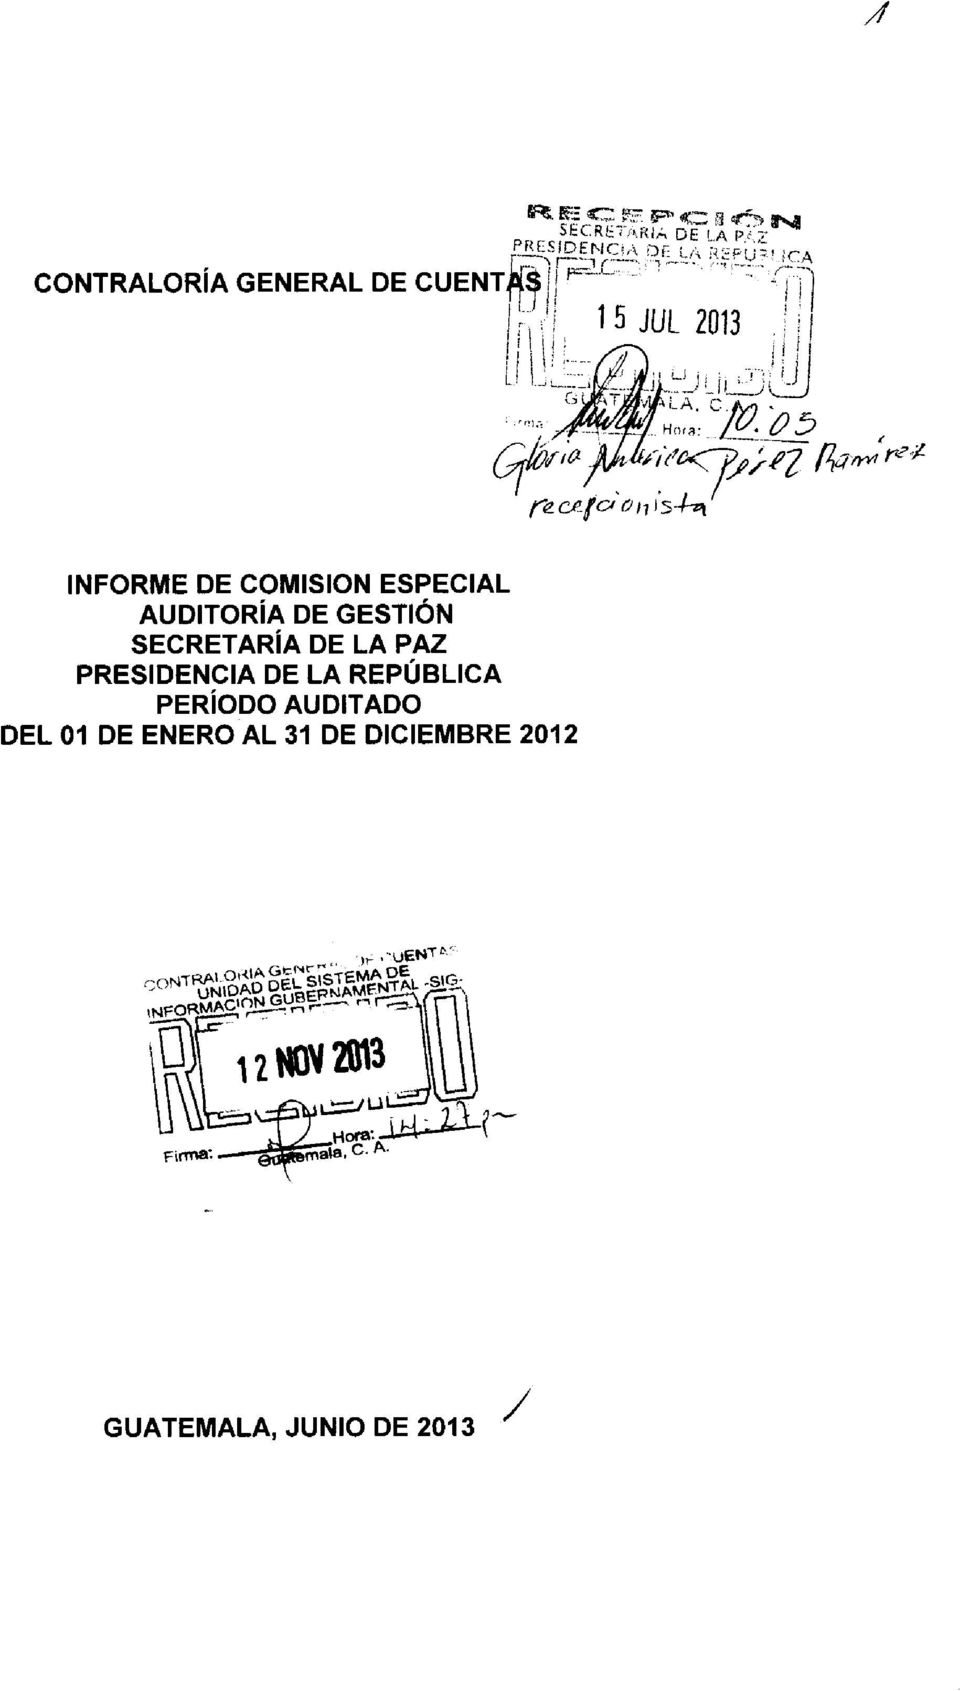 I 1 5 JUL 2013 ; 1 I - re, celd 017 S-1-n INFORME DE COMISION ESPECIAL AUDITORÍA DE GESTIÓN